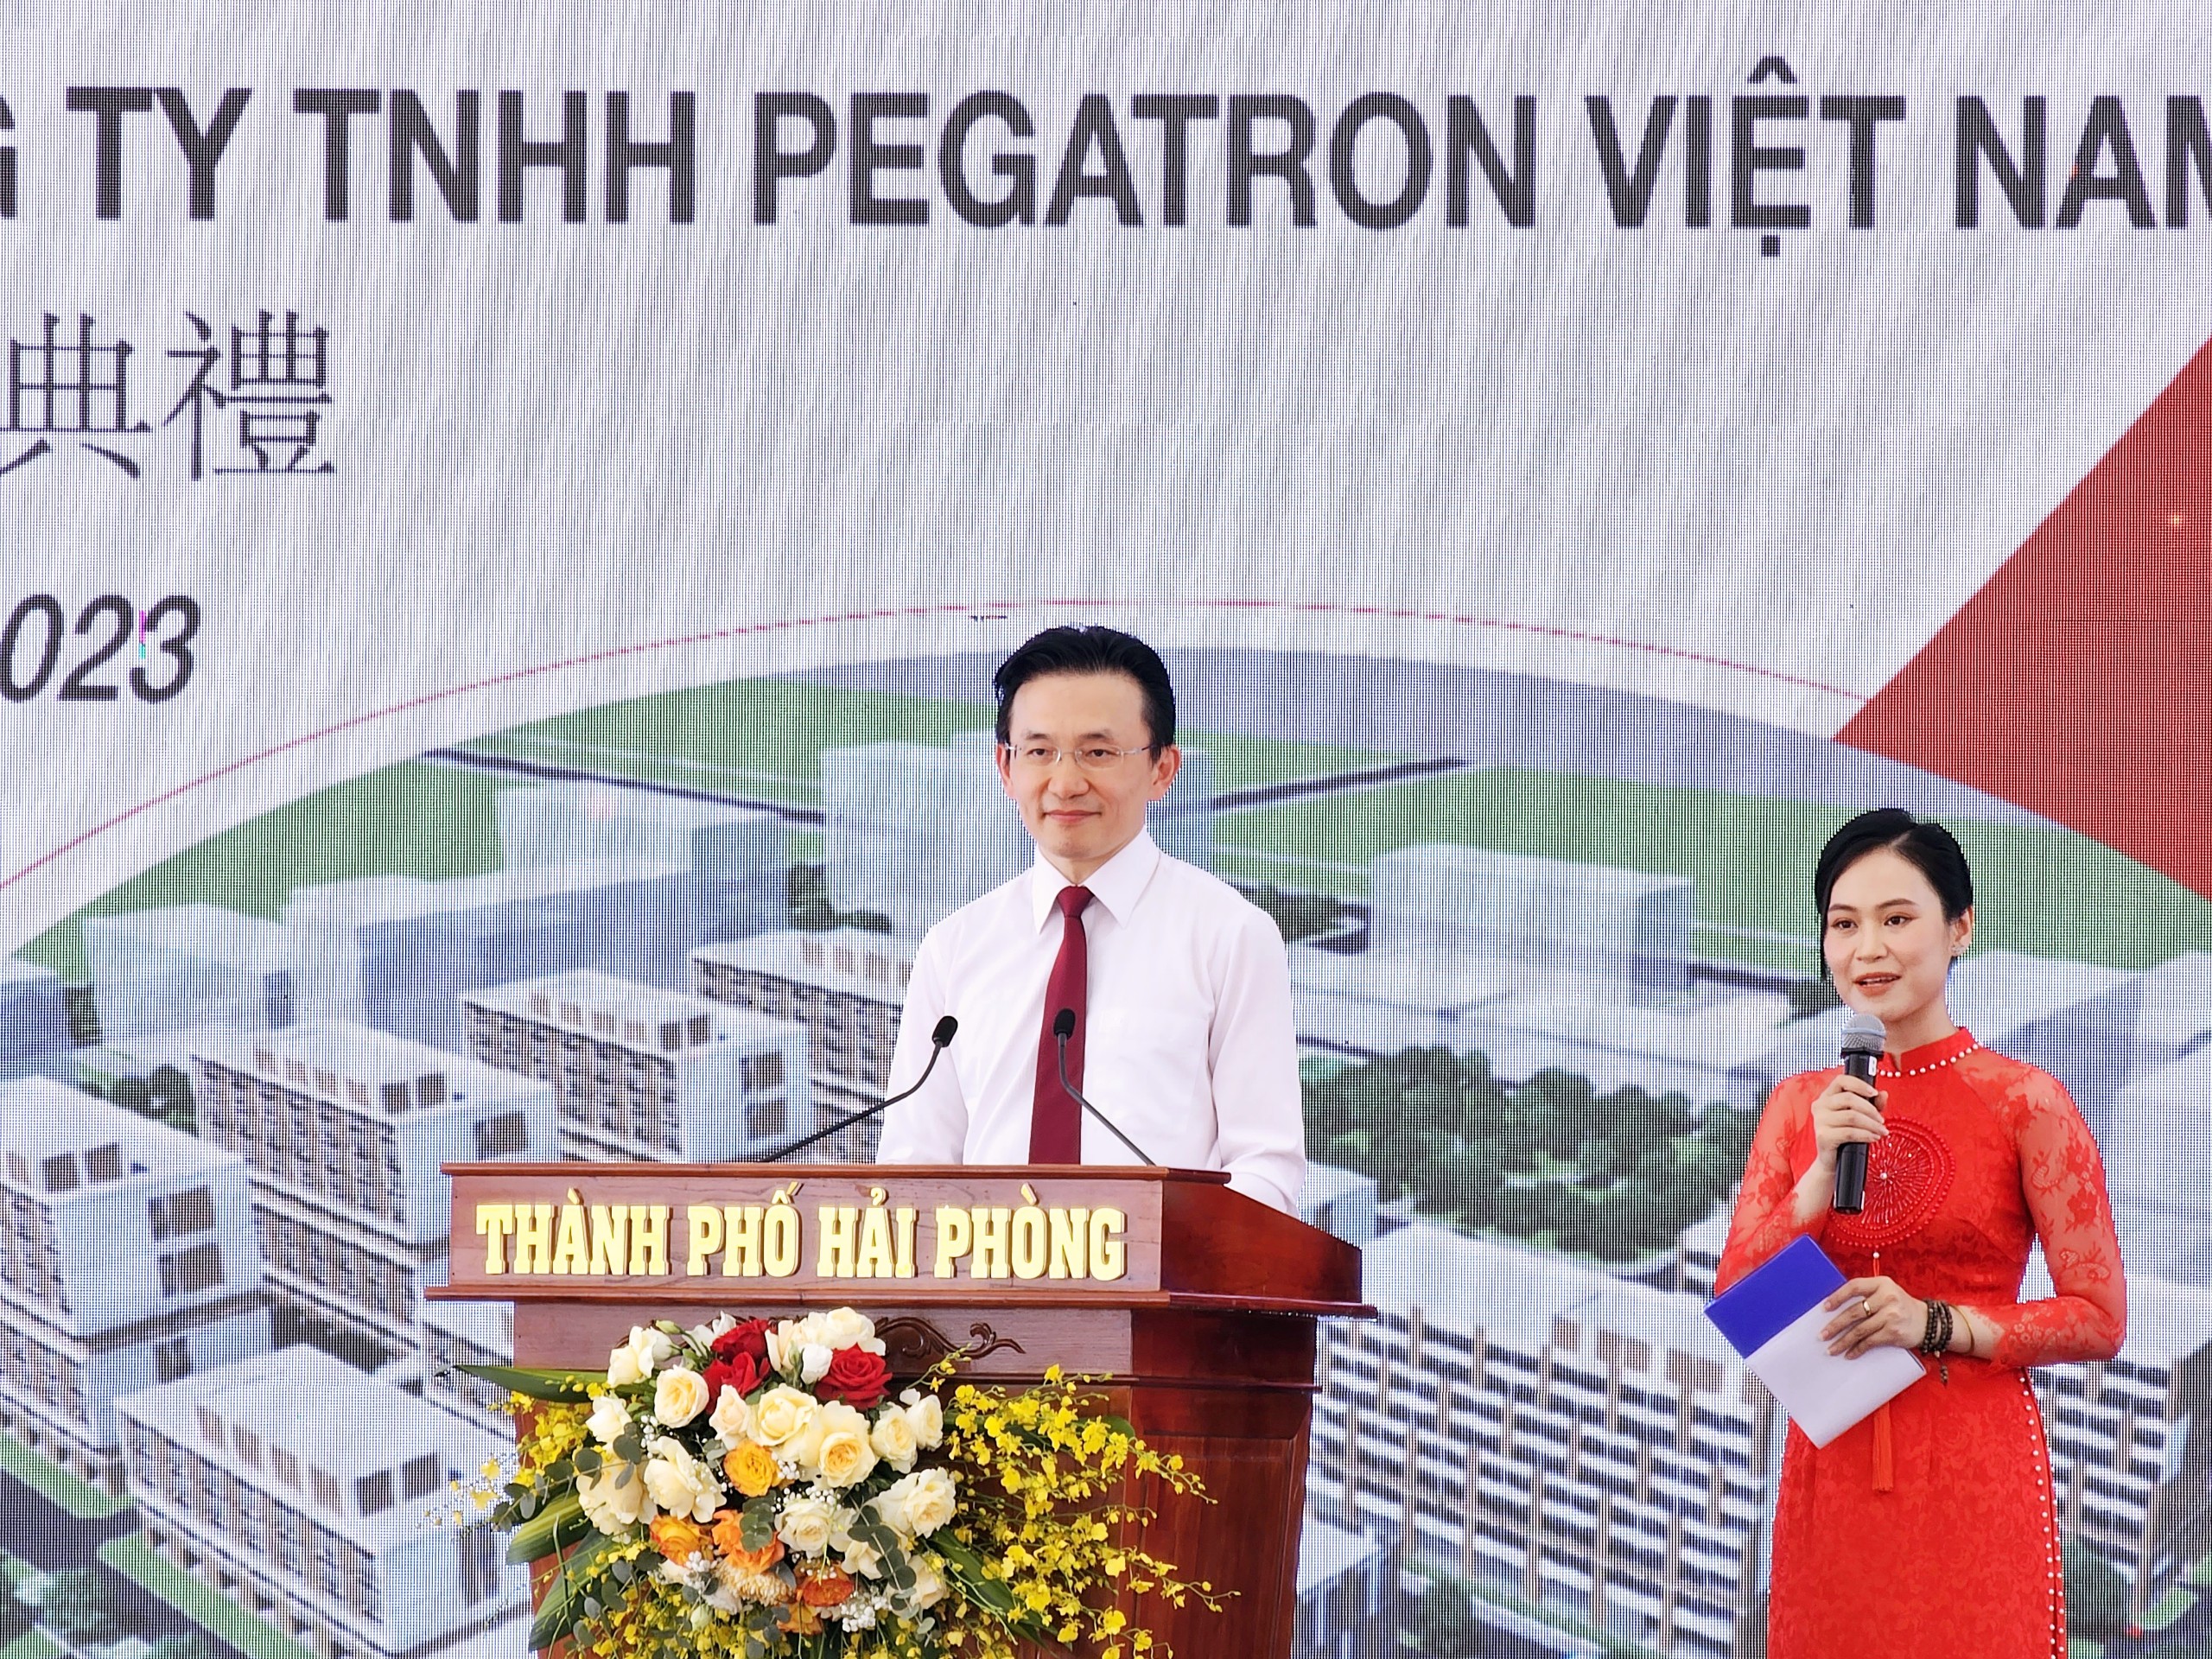 Hải Phòng khởi công xây dựng khu nhà ở công nhân Pegatron Việt Nam - ảnh 4